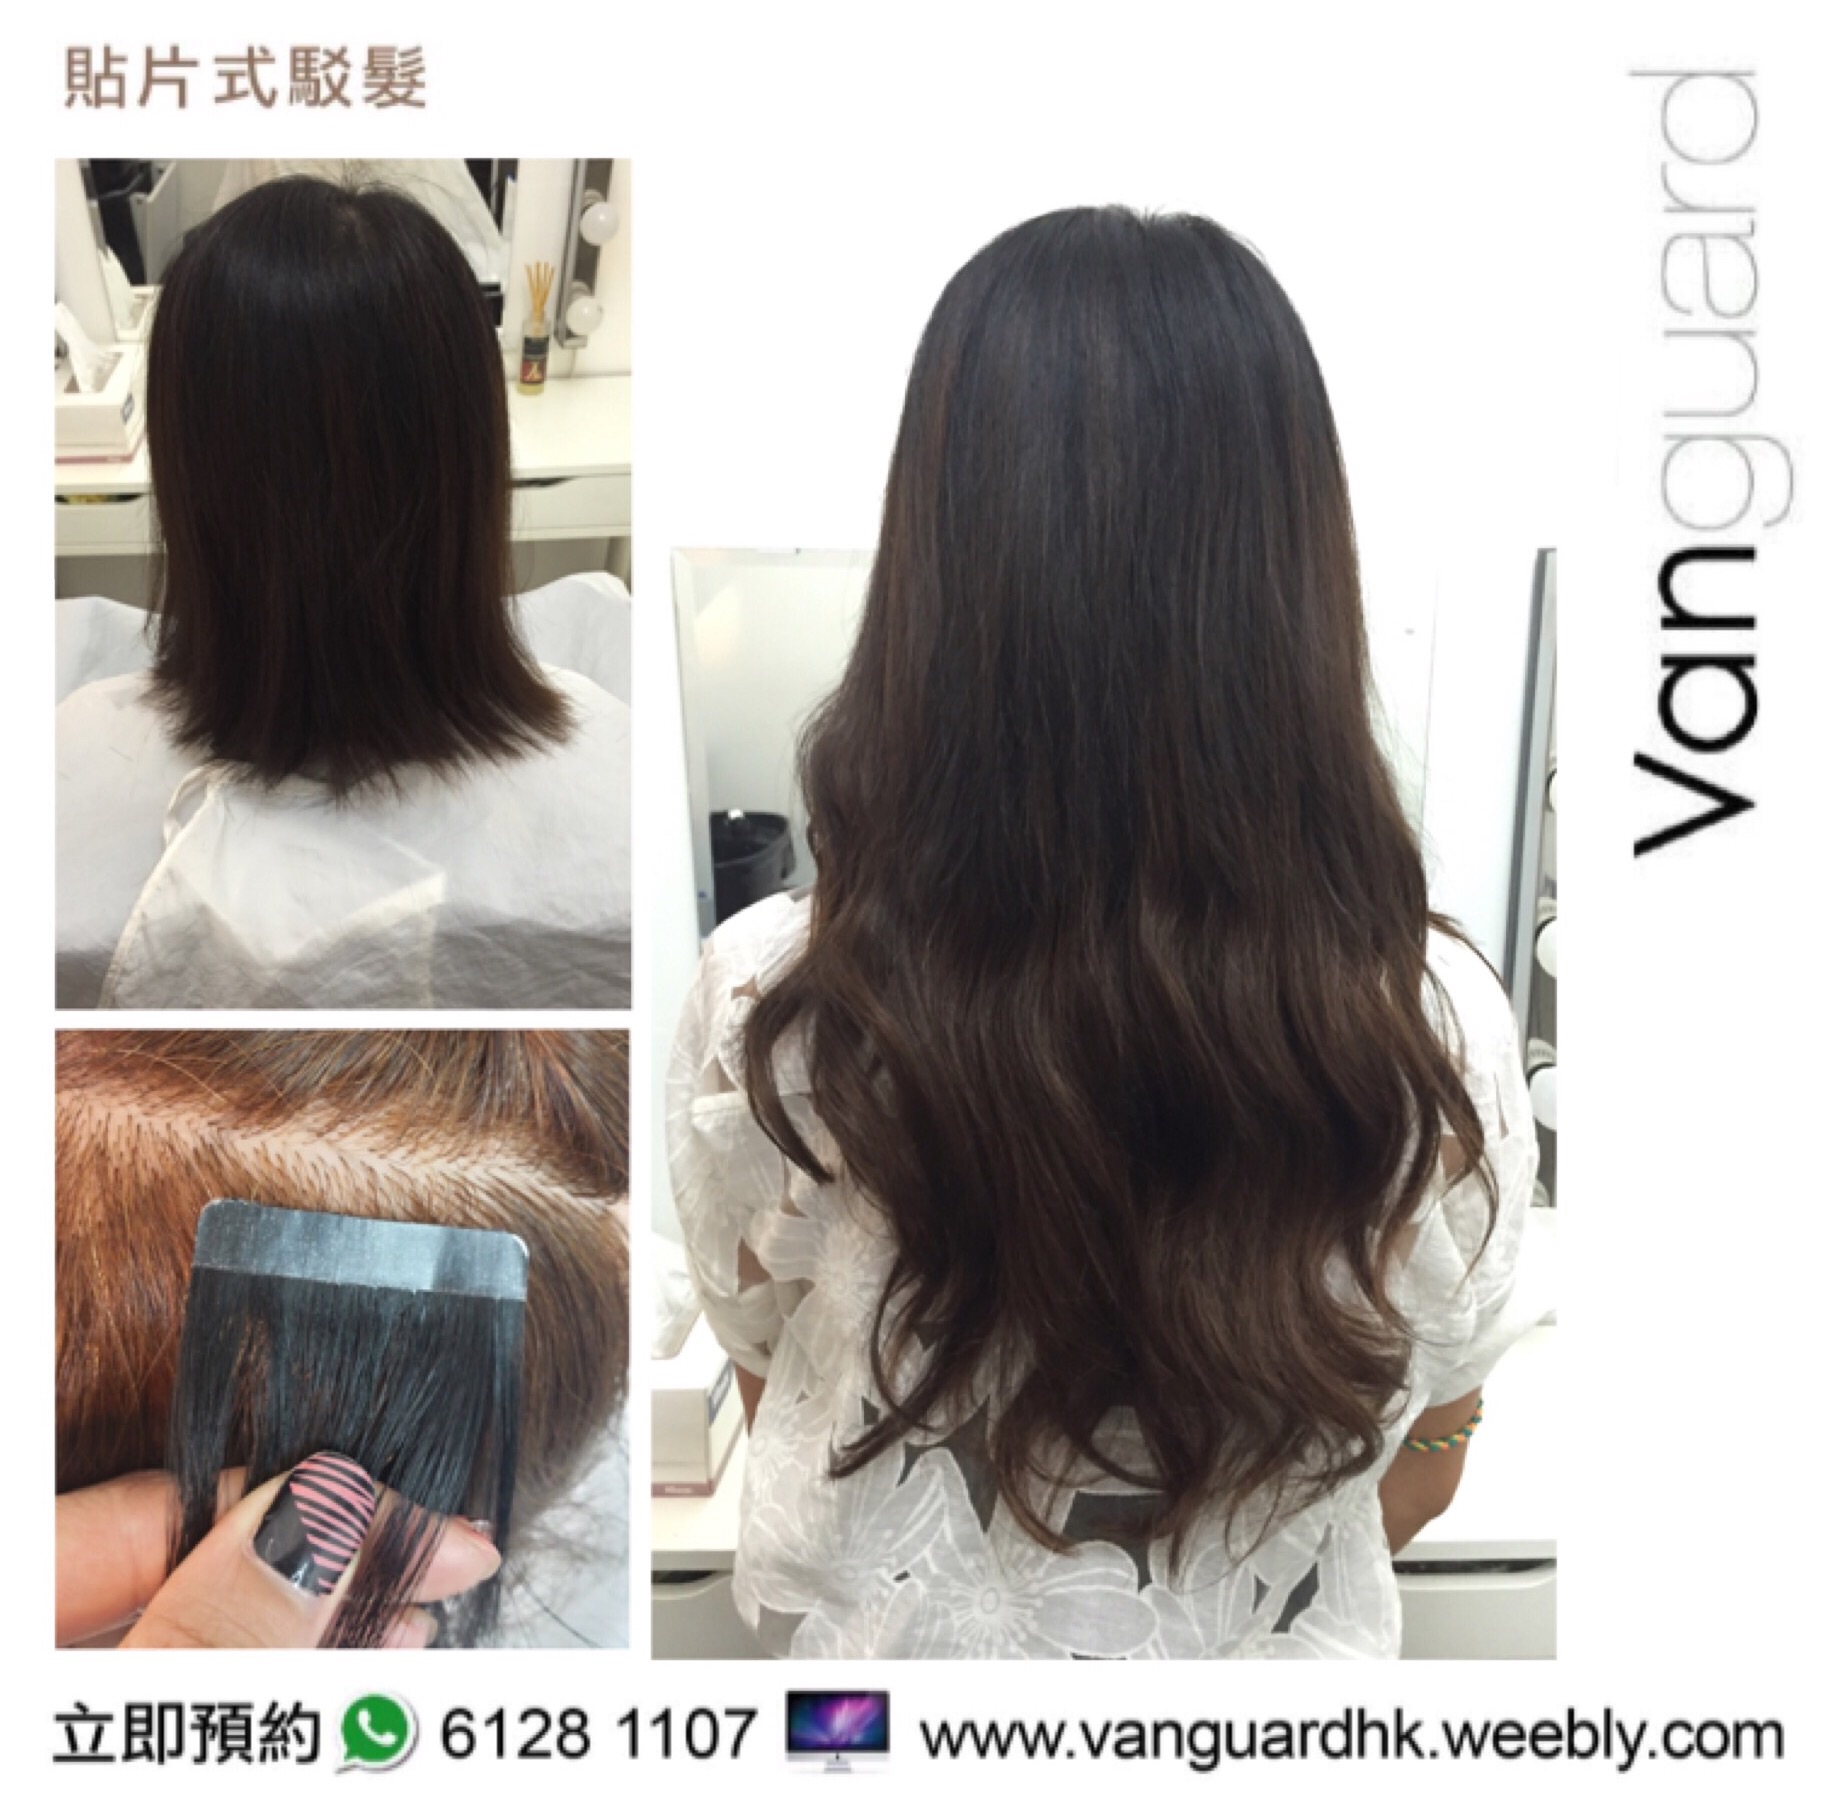 香港美髮網 HK Hair Salon 髮型屋Salon / 髮型師: Vanguard HK 無痕貼片式駁髮專門店